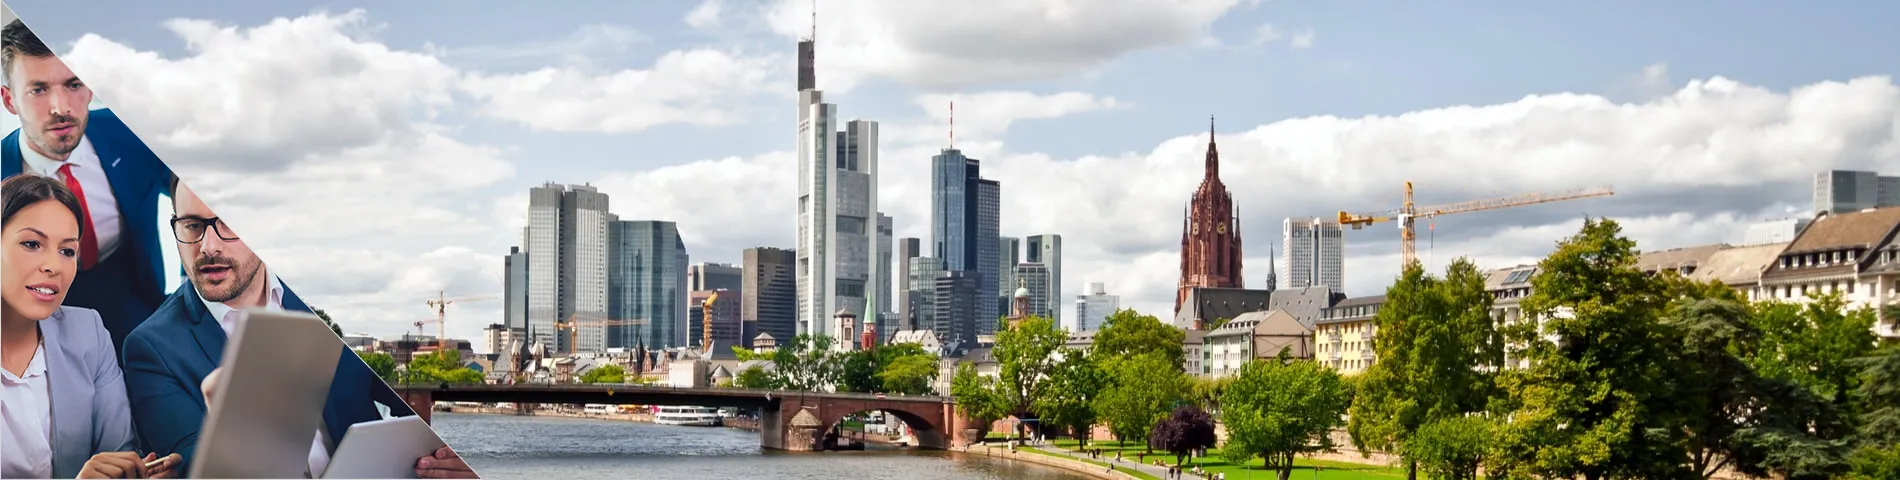 Frankfurt - Grup Combinat: Estàndard i Negocis  